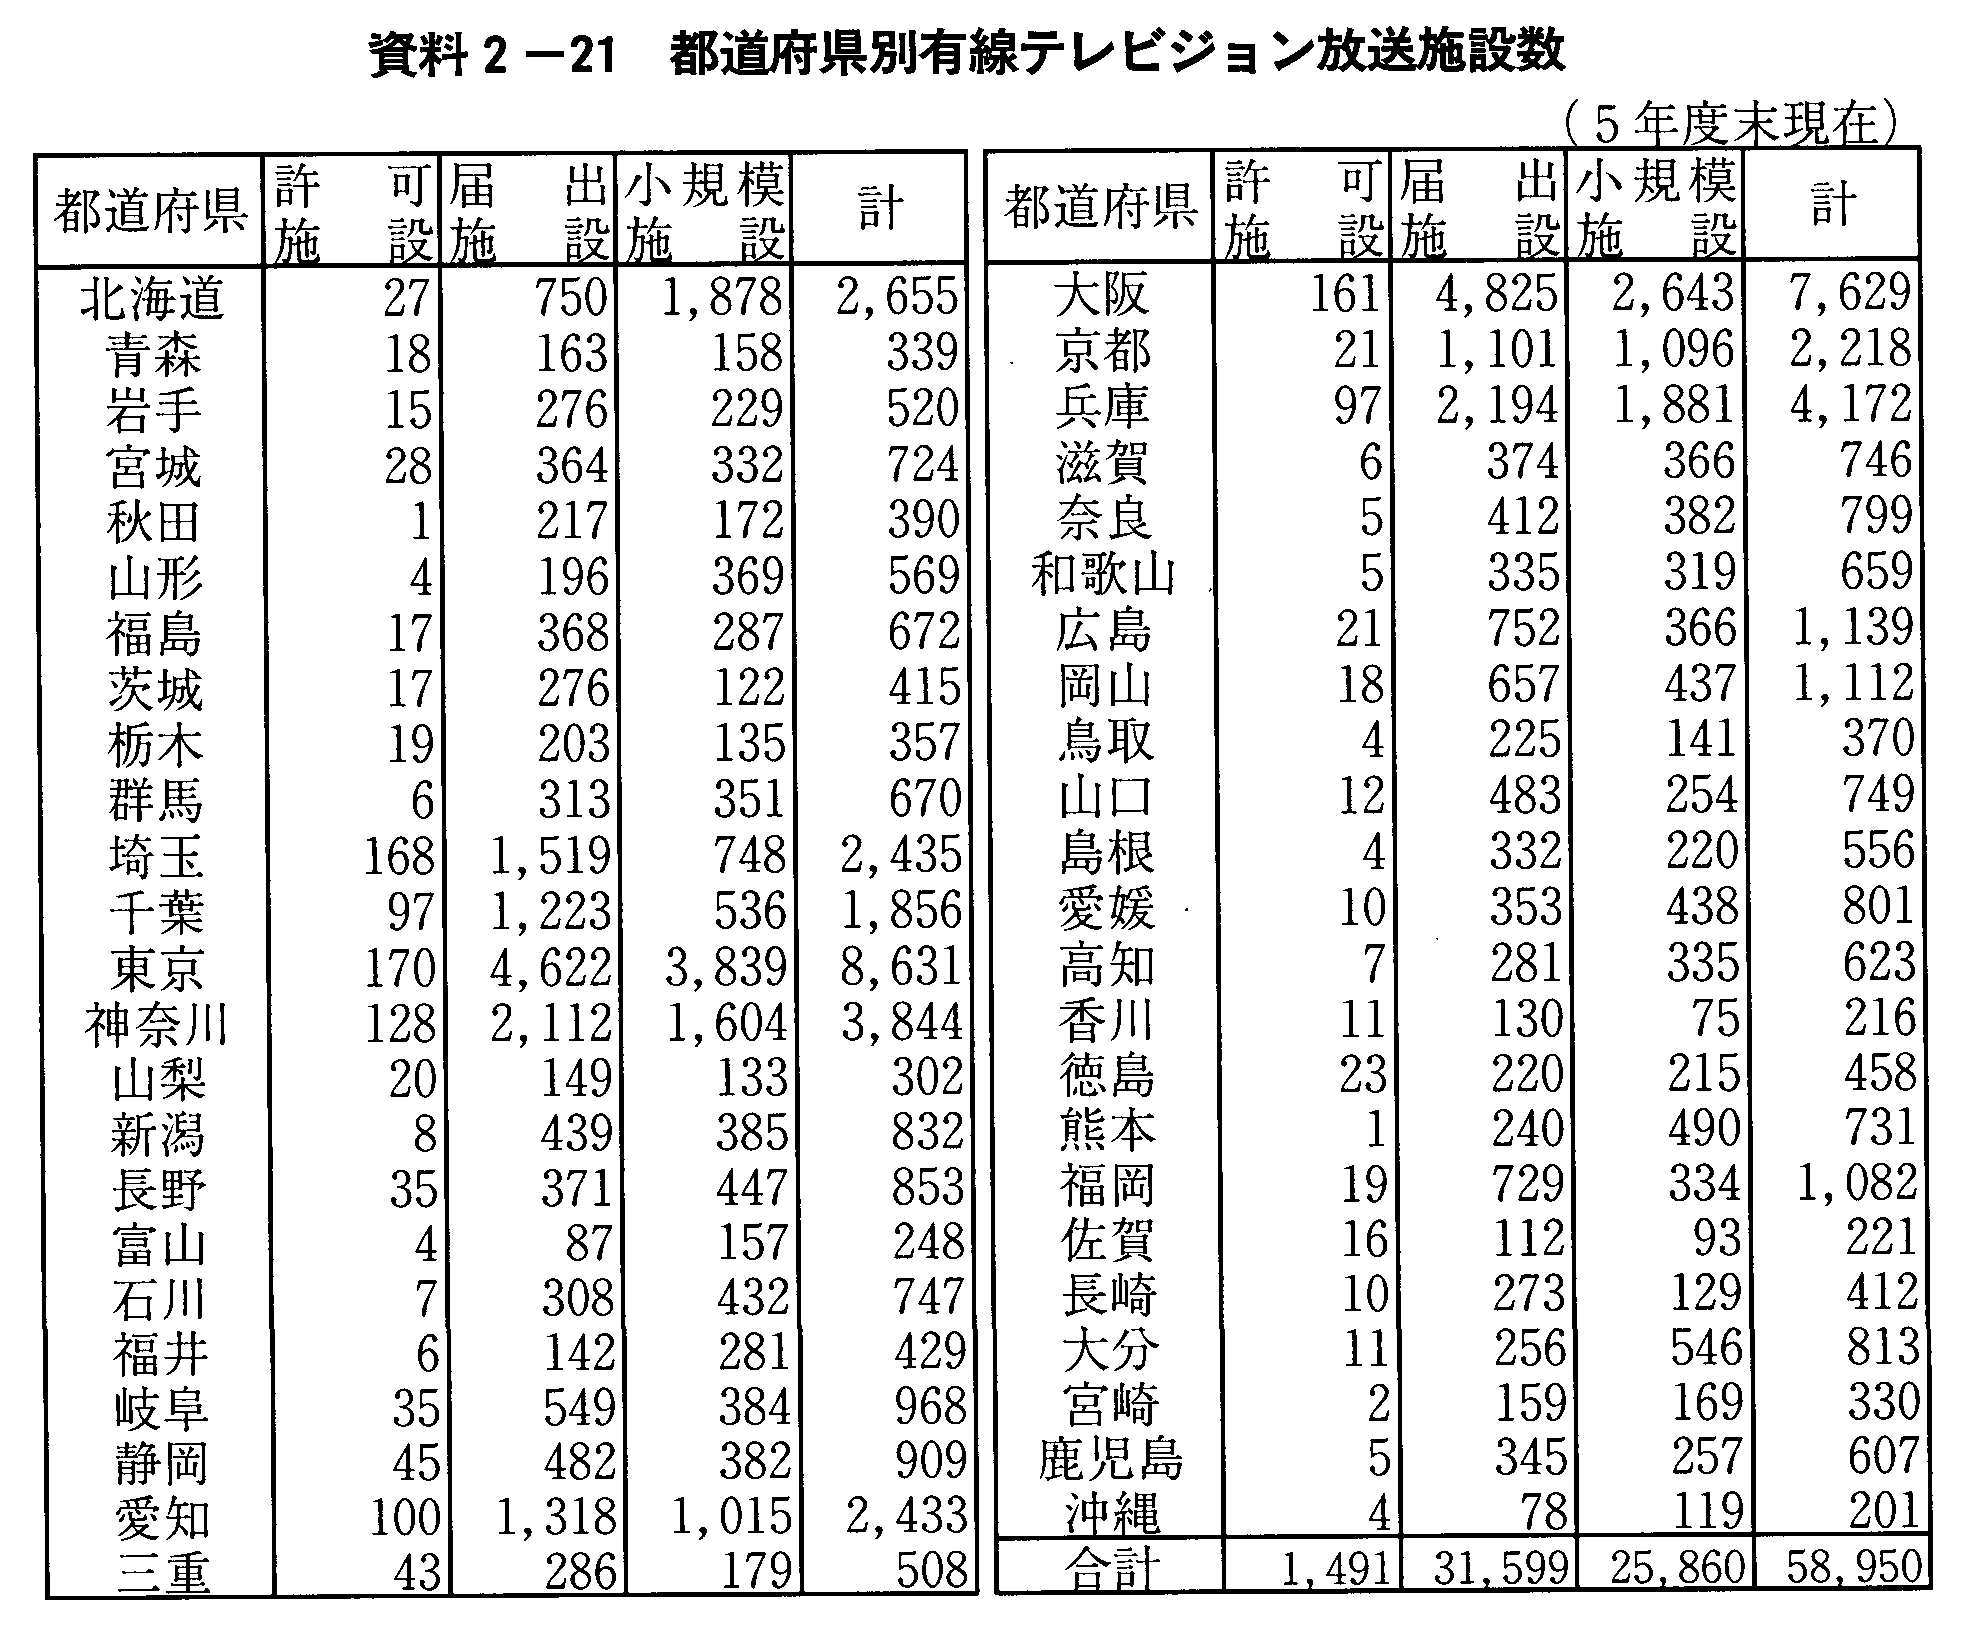 資料2-21 都道府県別有線テレビジョン放送施設数(5年度末現在)